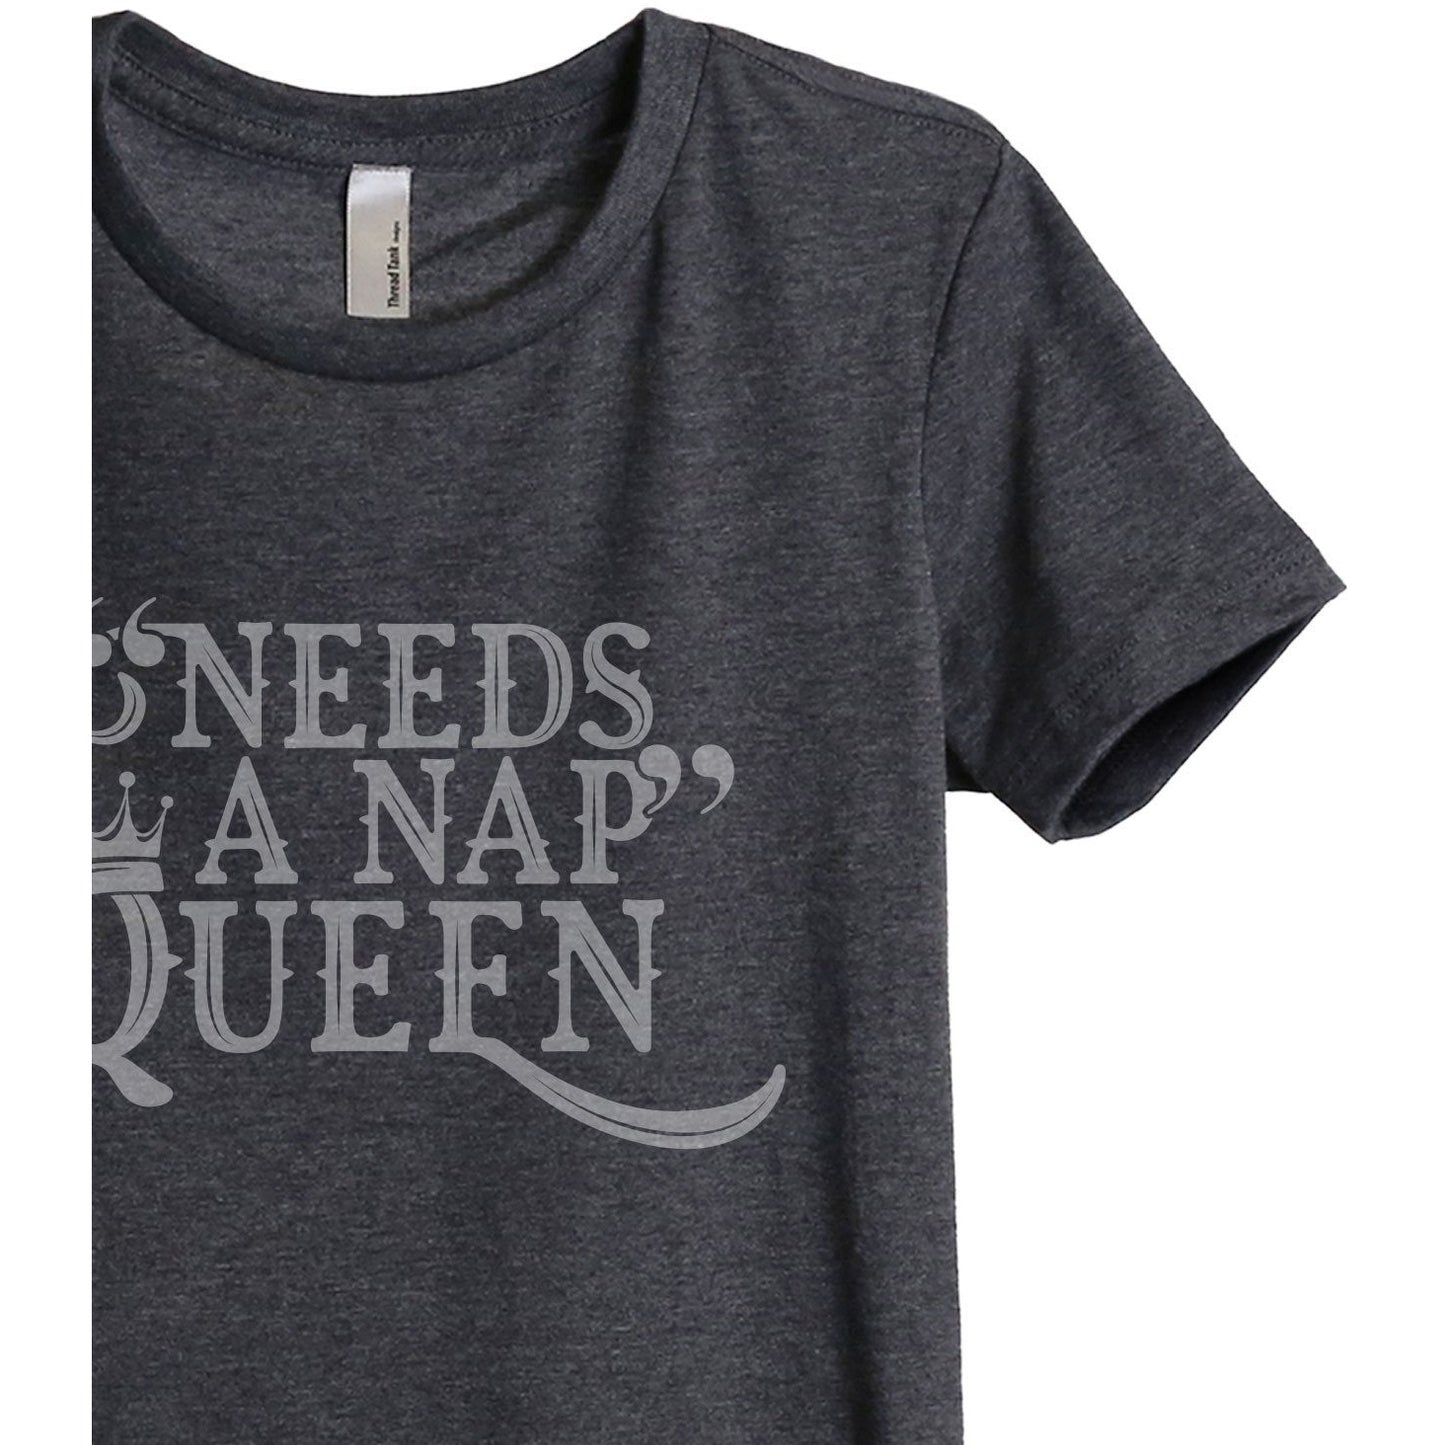 Needs A Nap Queen Women's Relaxed Crew T-Shirt Charcoal Shirt Image Closeup Details